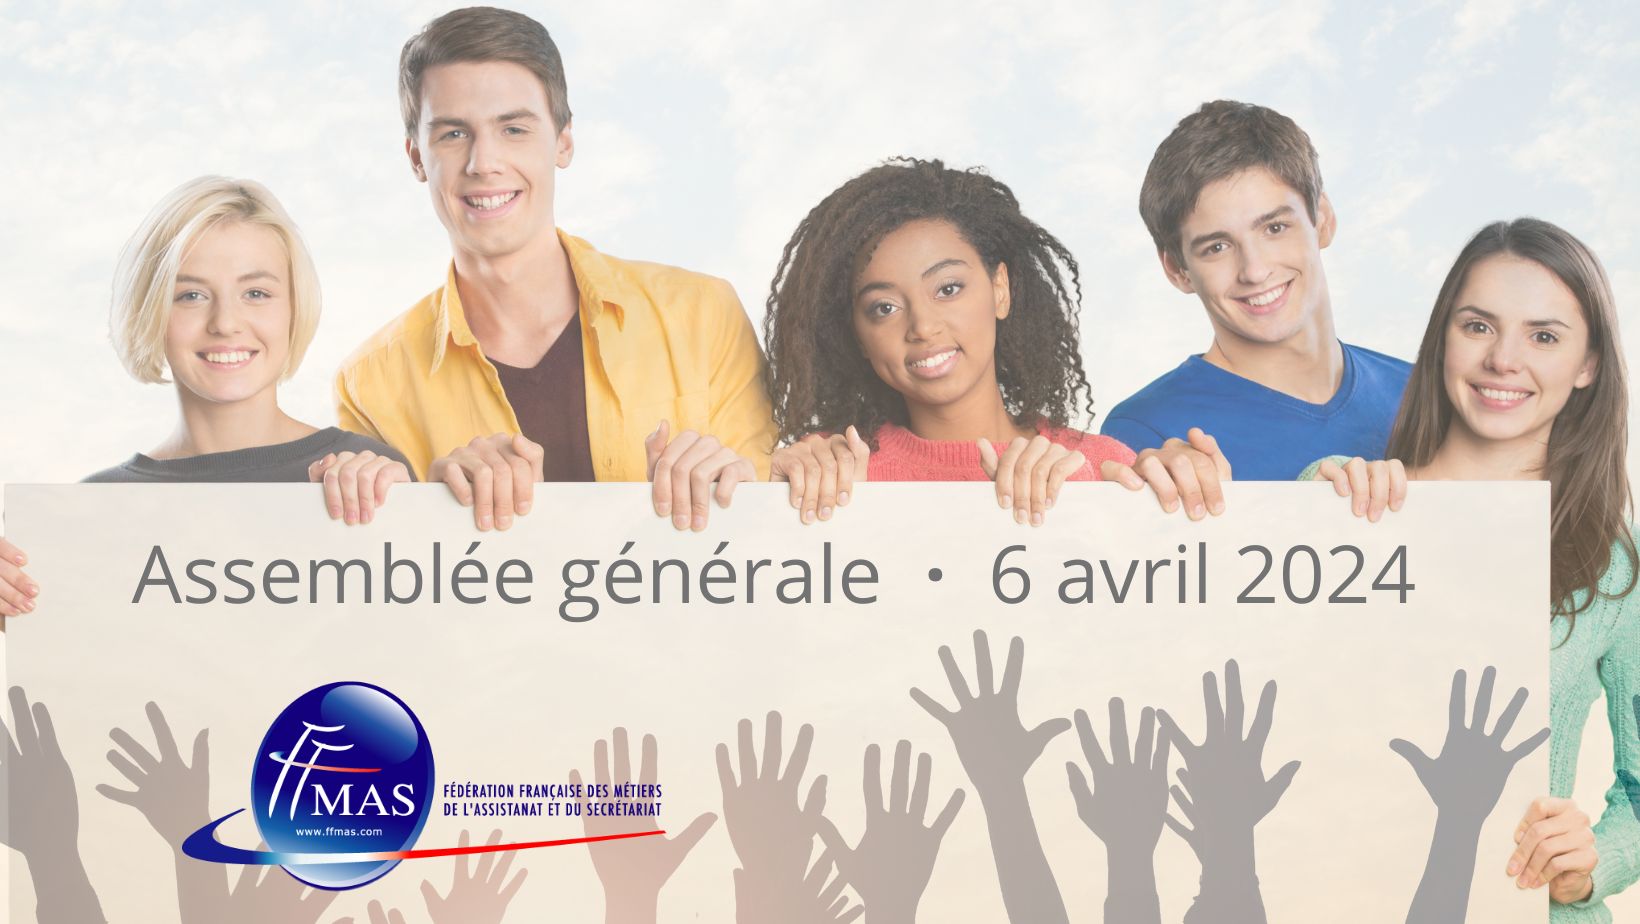 You are currently viewing Assemblée générale FFMAS du 6 avril 2024